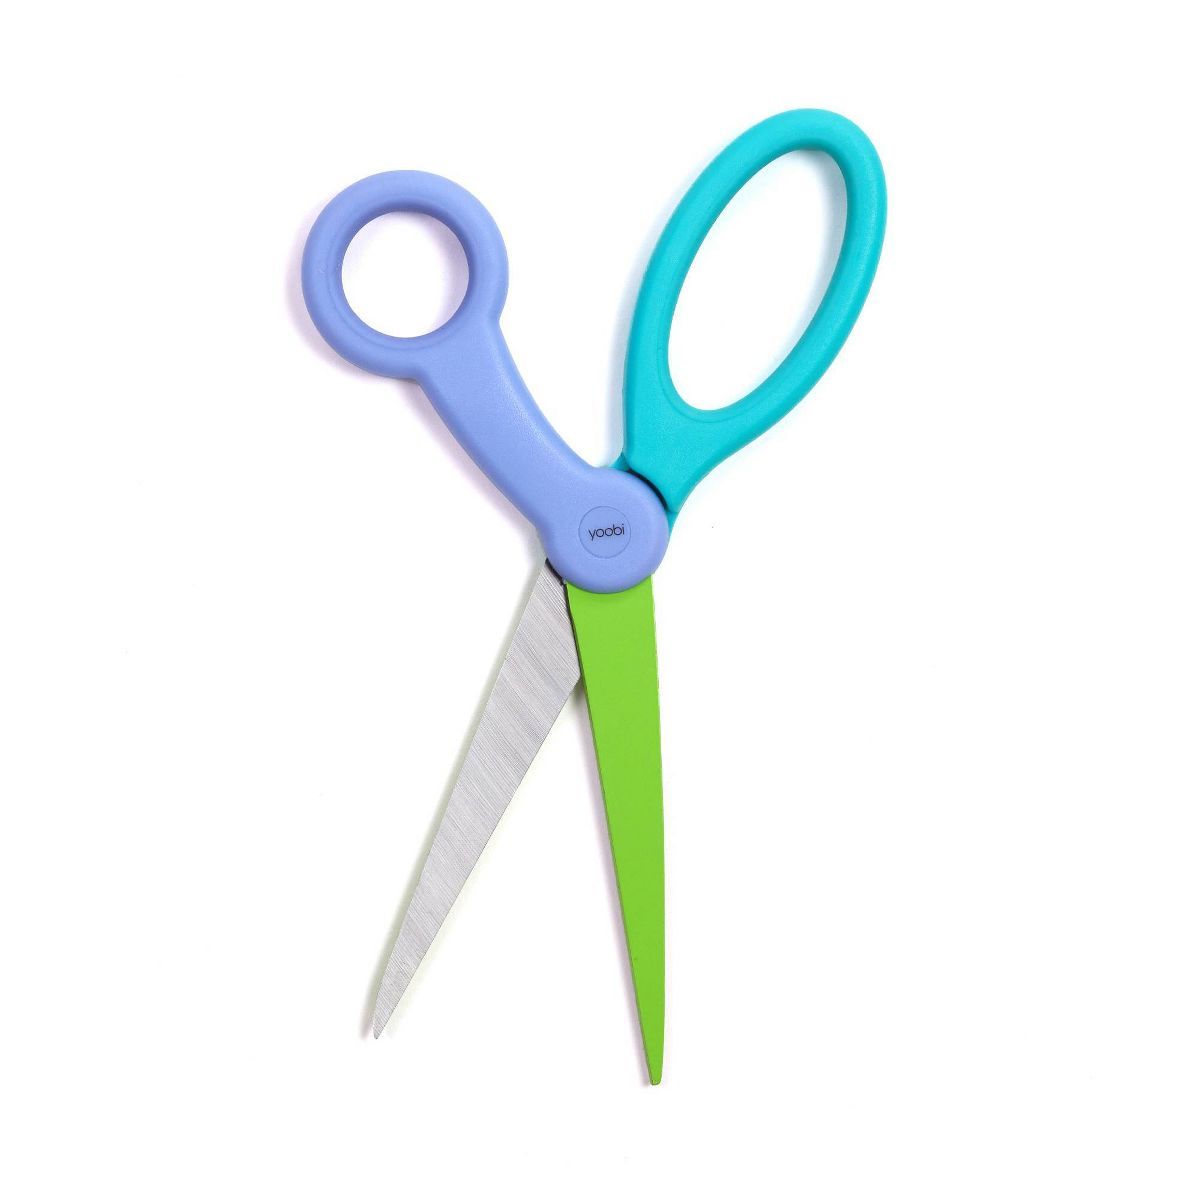 Scissors Color Block - Yoobi™ | Target